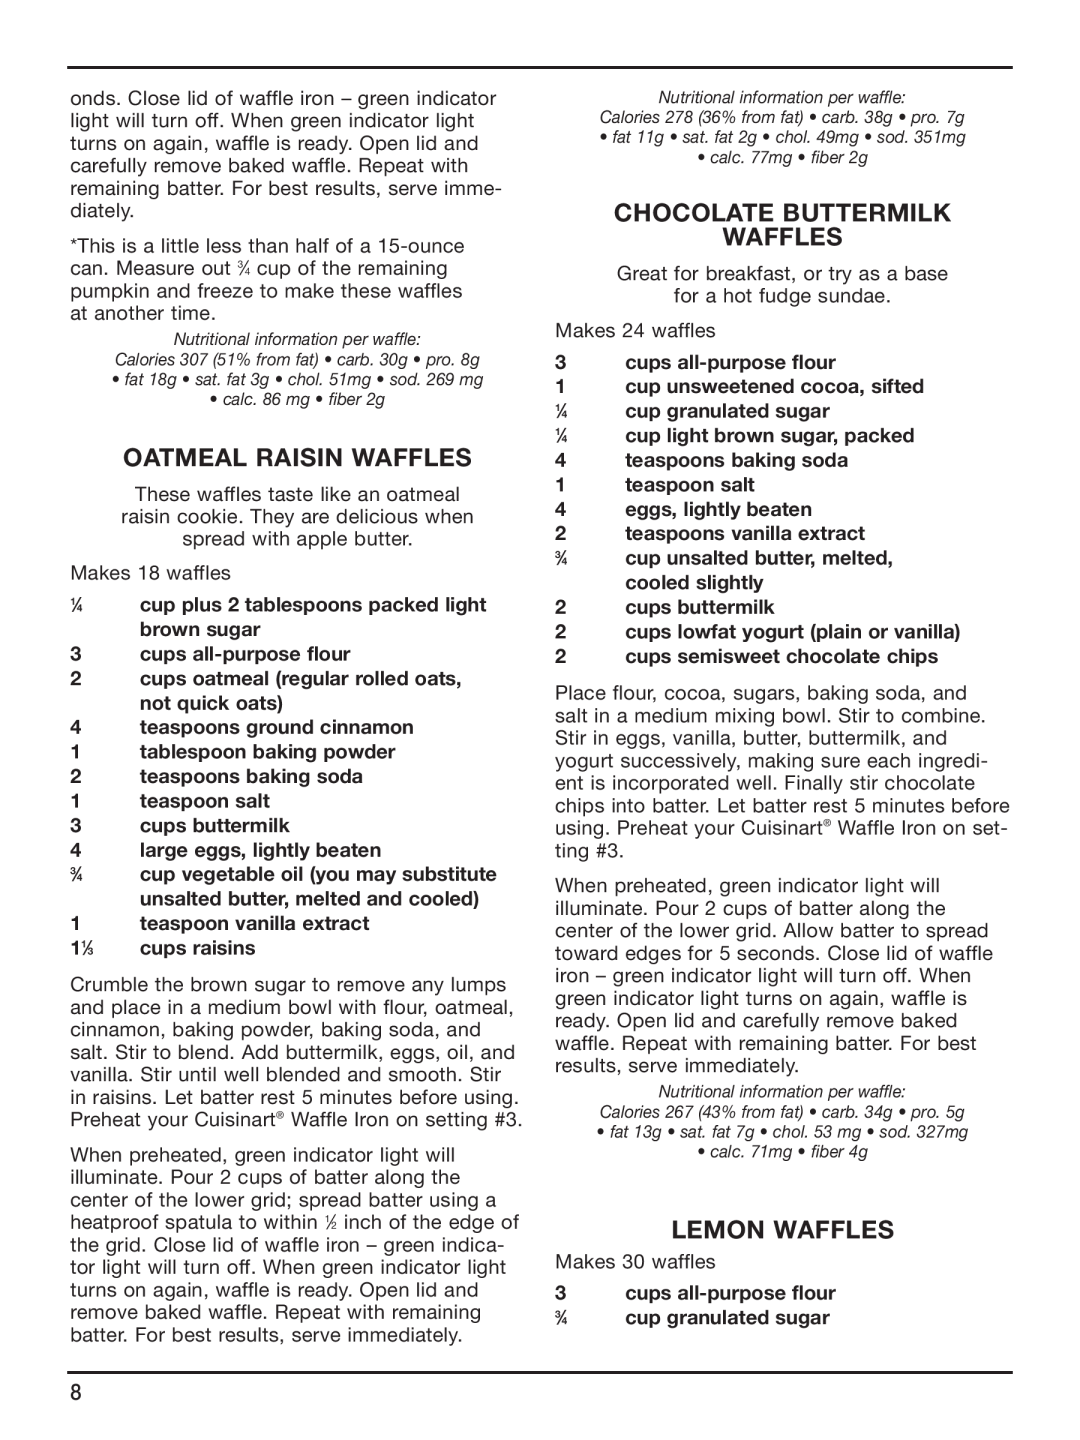 Cuisinart WAF-6 manual Oatmeal Raisin Waffles, Chocolate Buttermilk Waffles, Lemon Waffles 